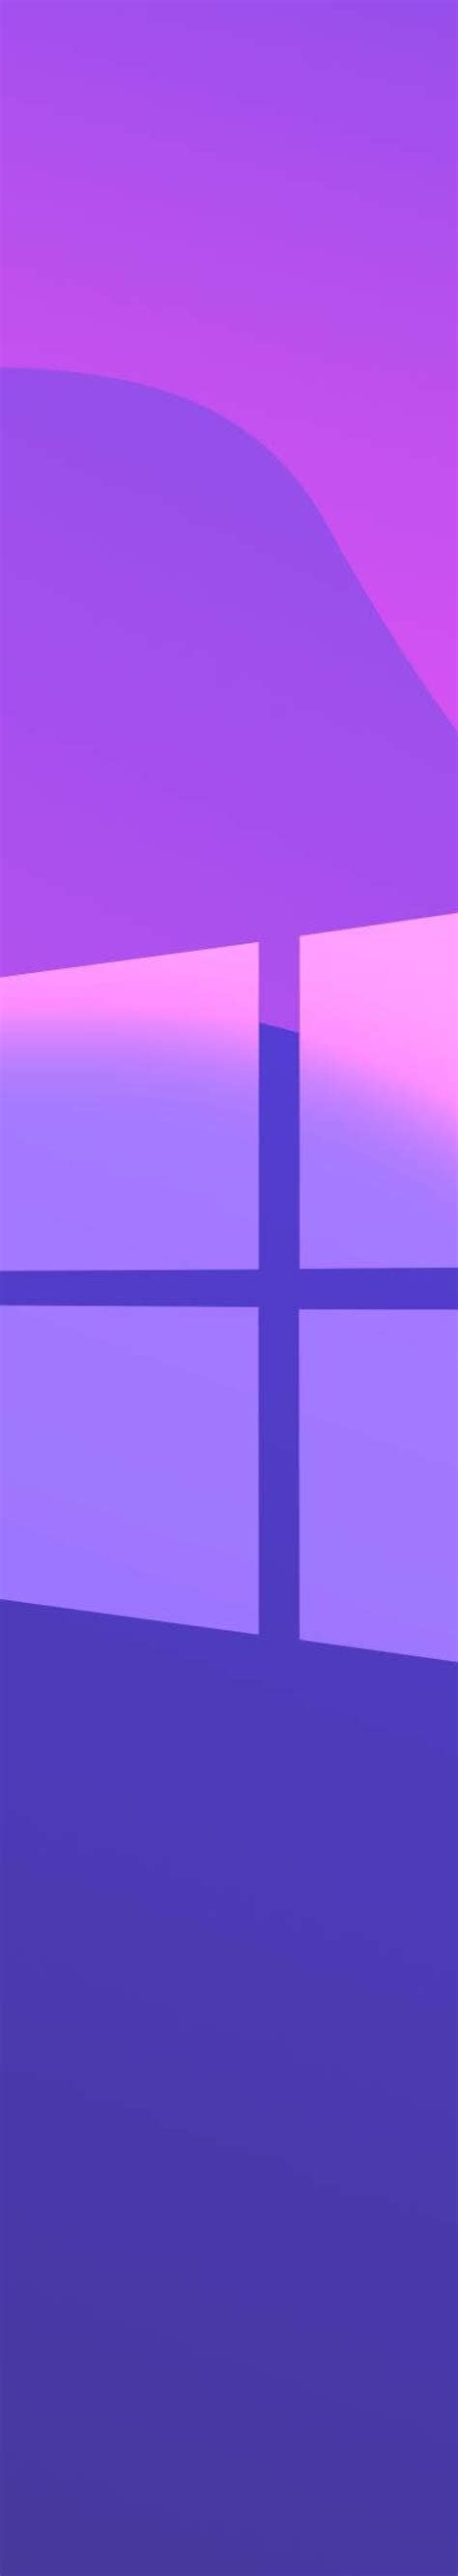 1280x7202 Windows 10 Purple Gradient 1280x7202 Resolution Wallpaper Hd